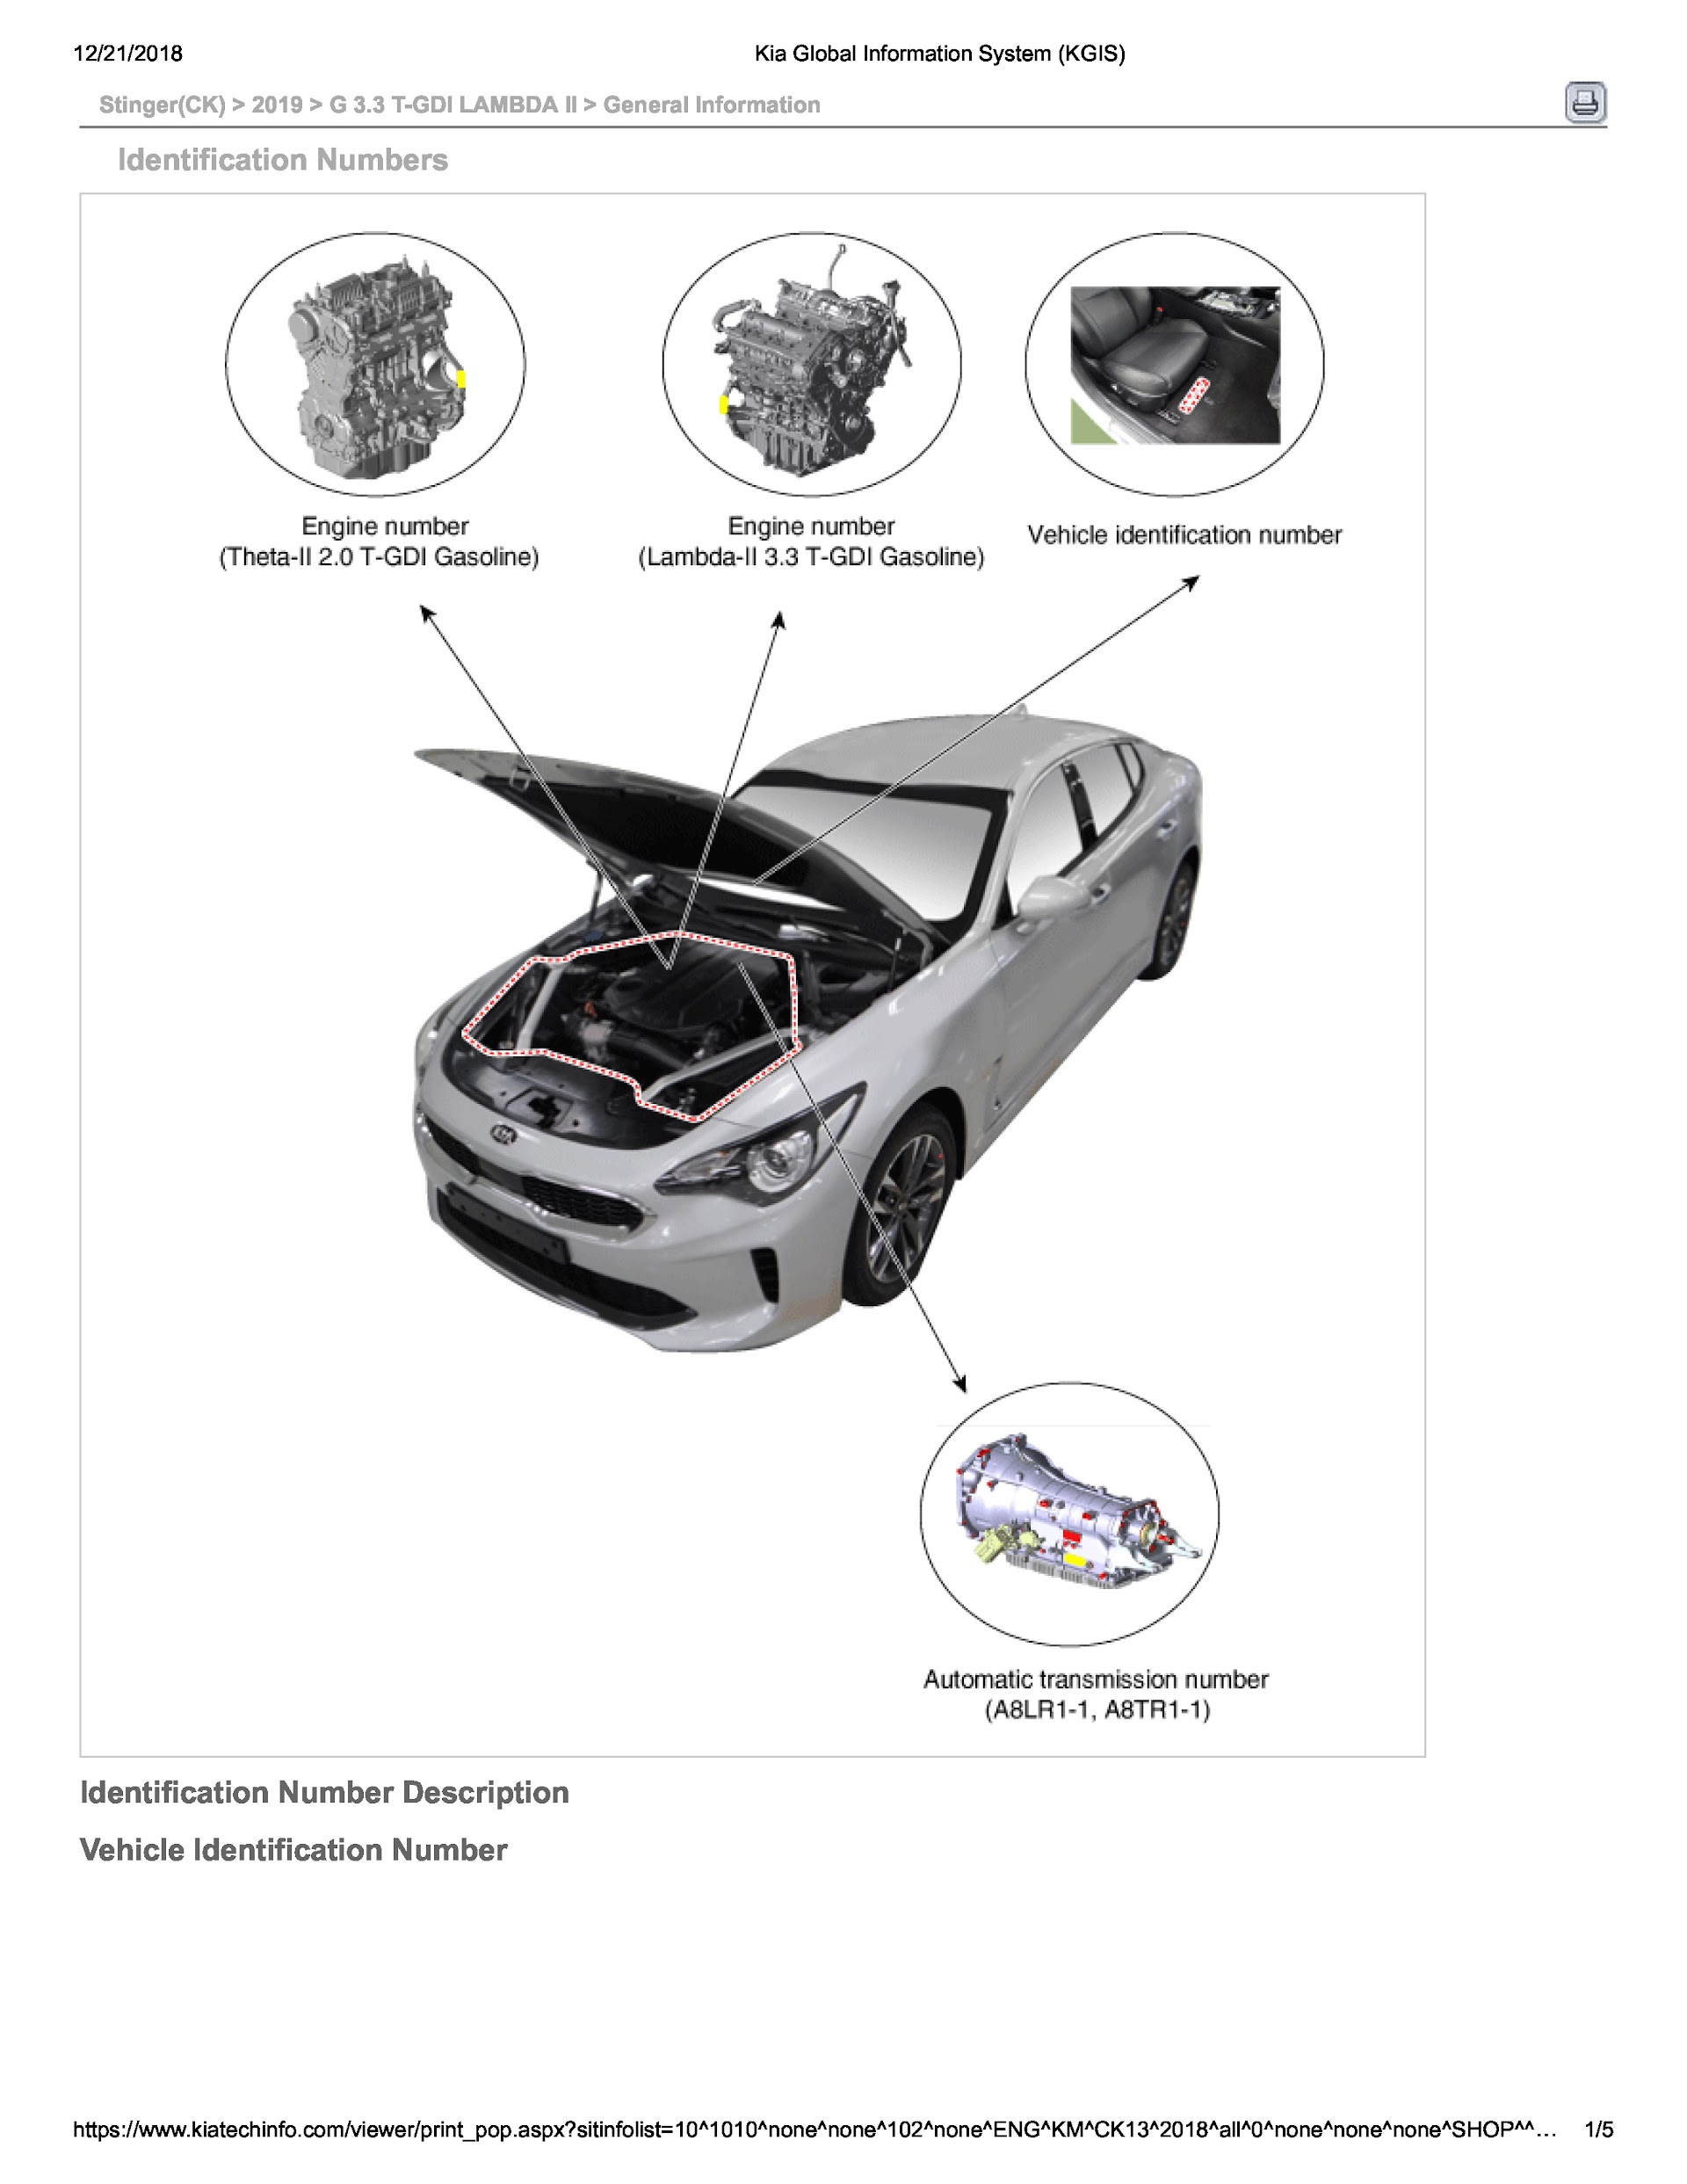 2019 Kia Stinger Repair Manual, Kia Global Information System